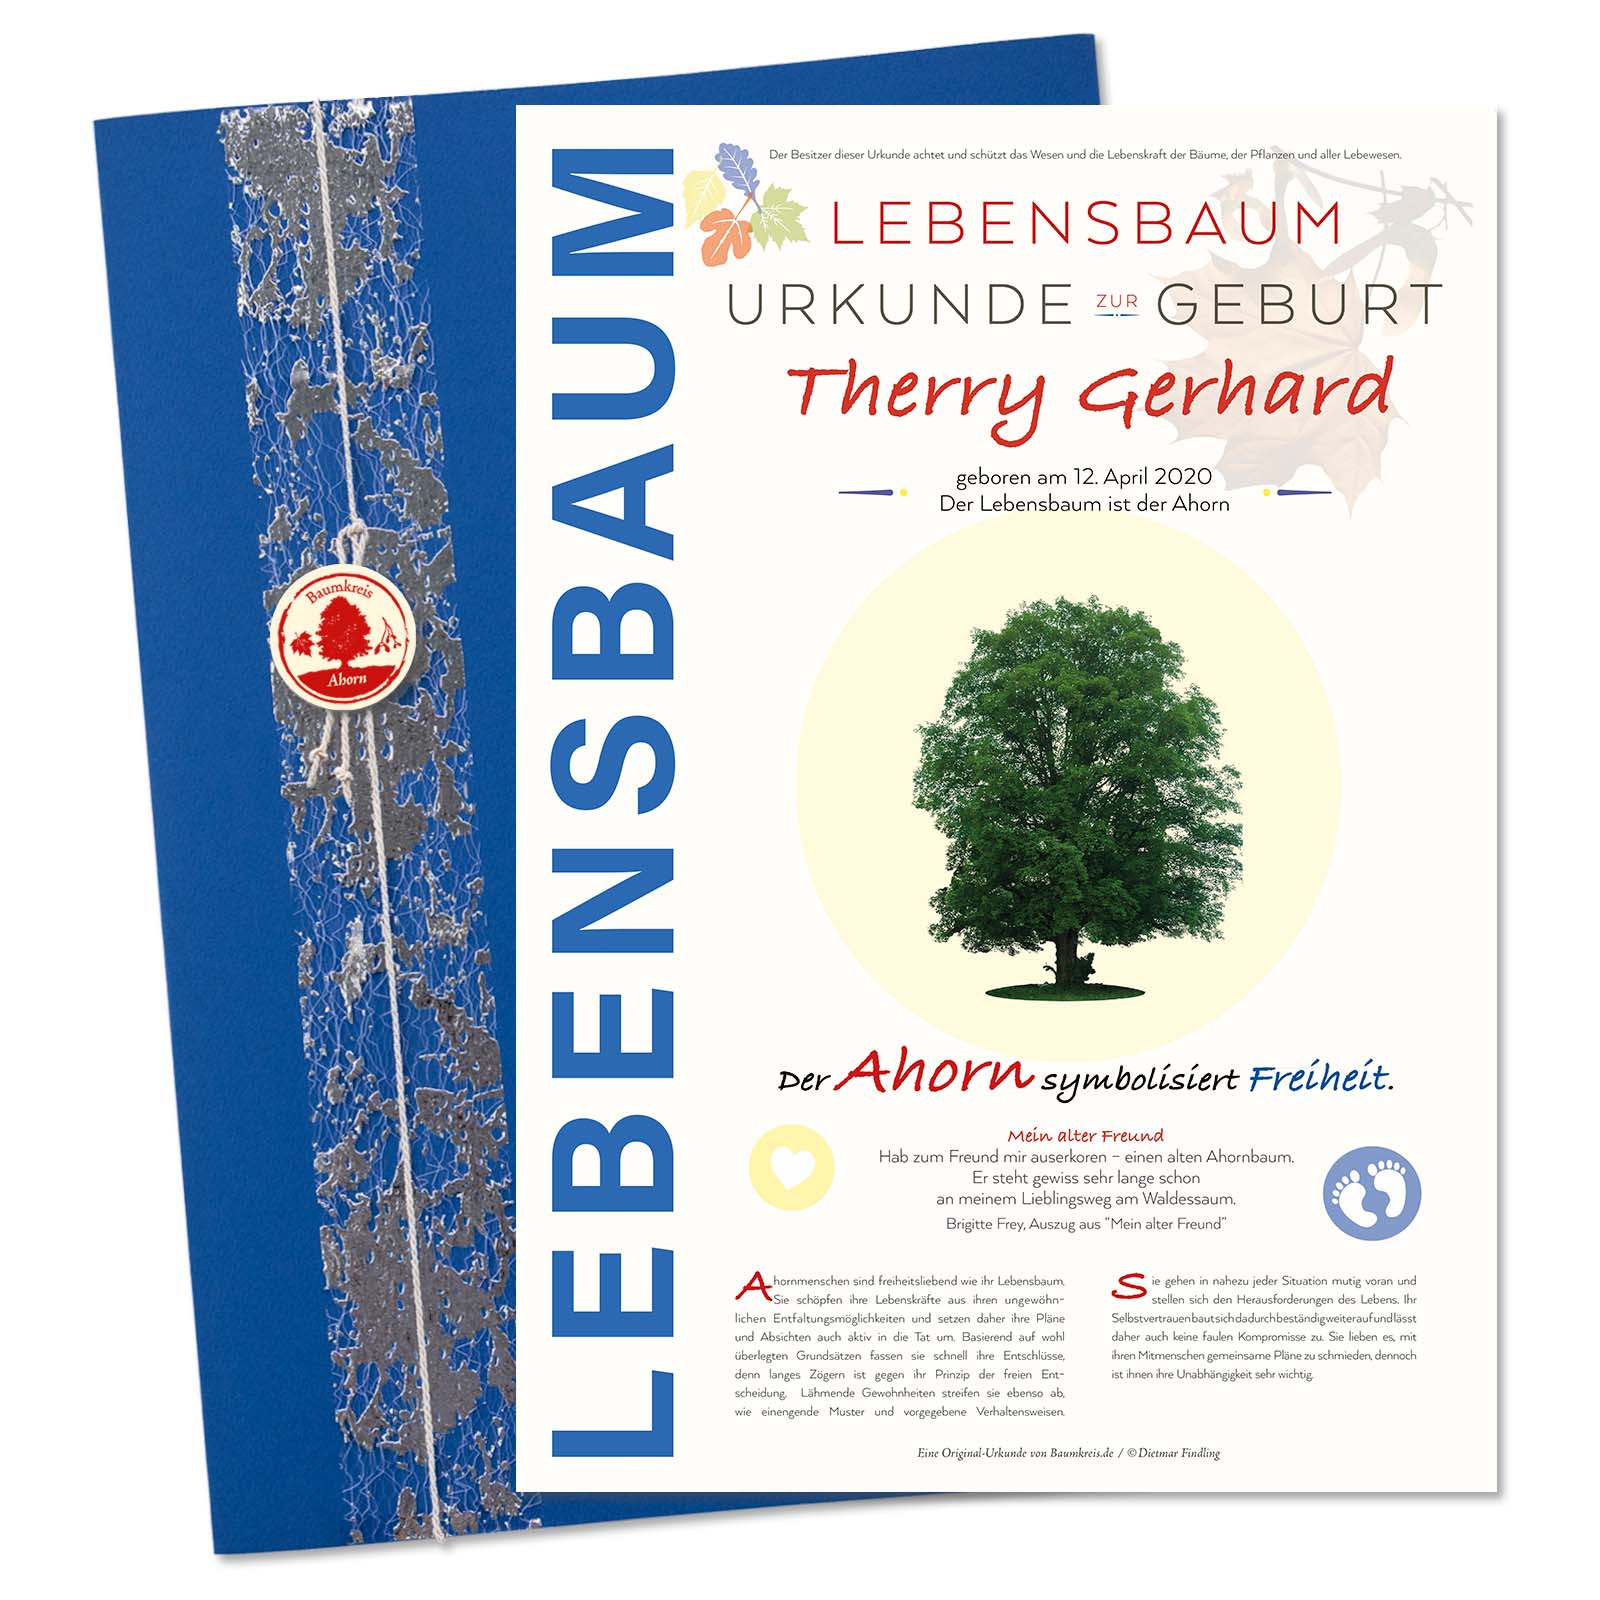 Jubiläums Baum Geburtstag 30 Jahre 16 cm Lebensbaum Geschenk Hochzeitstag 